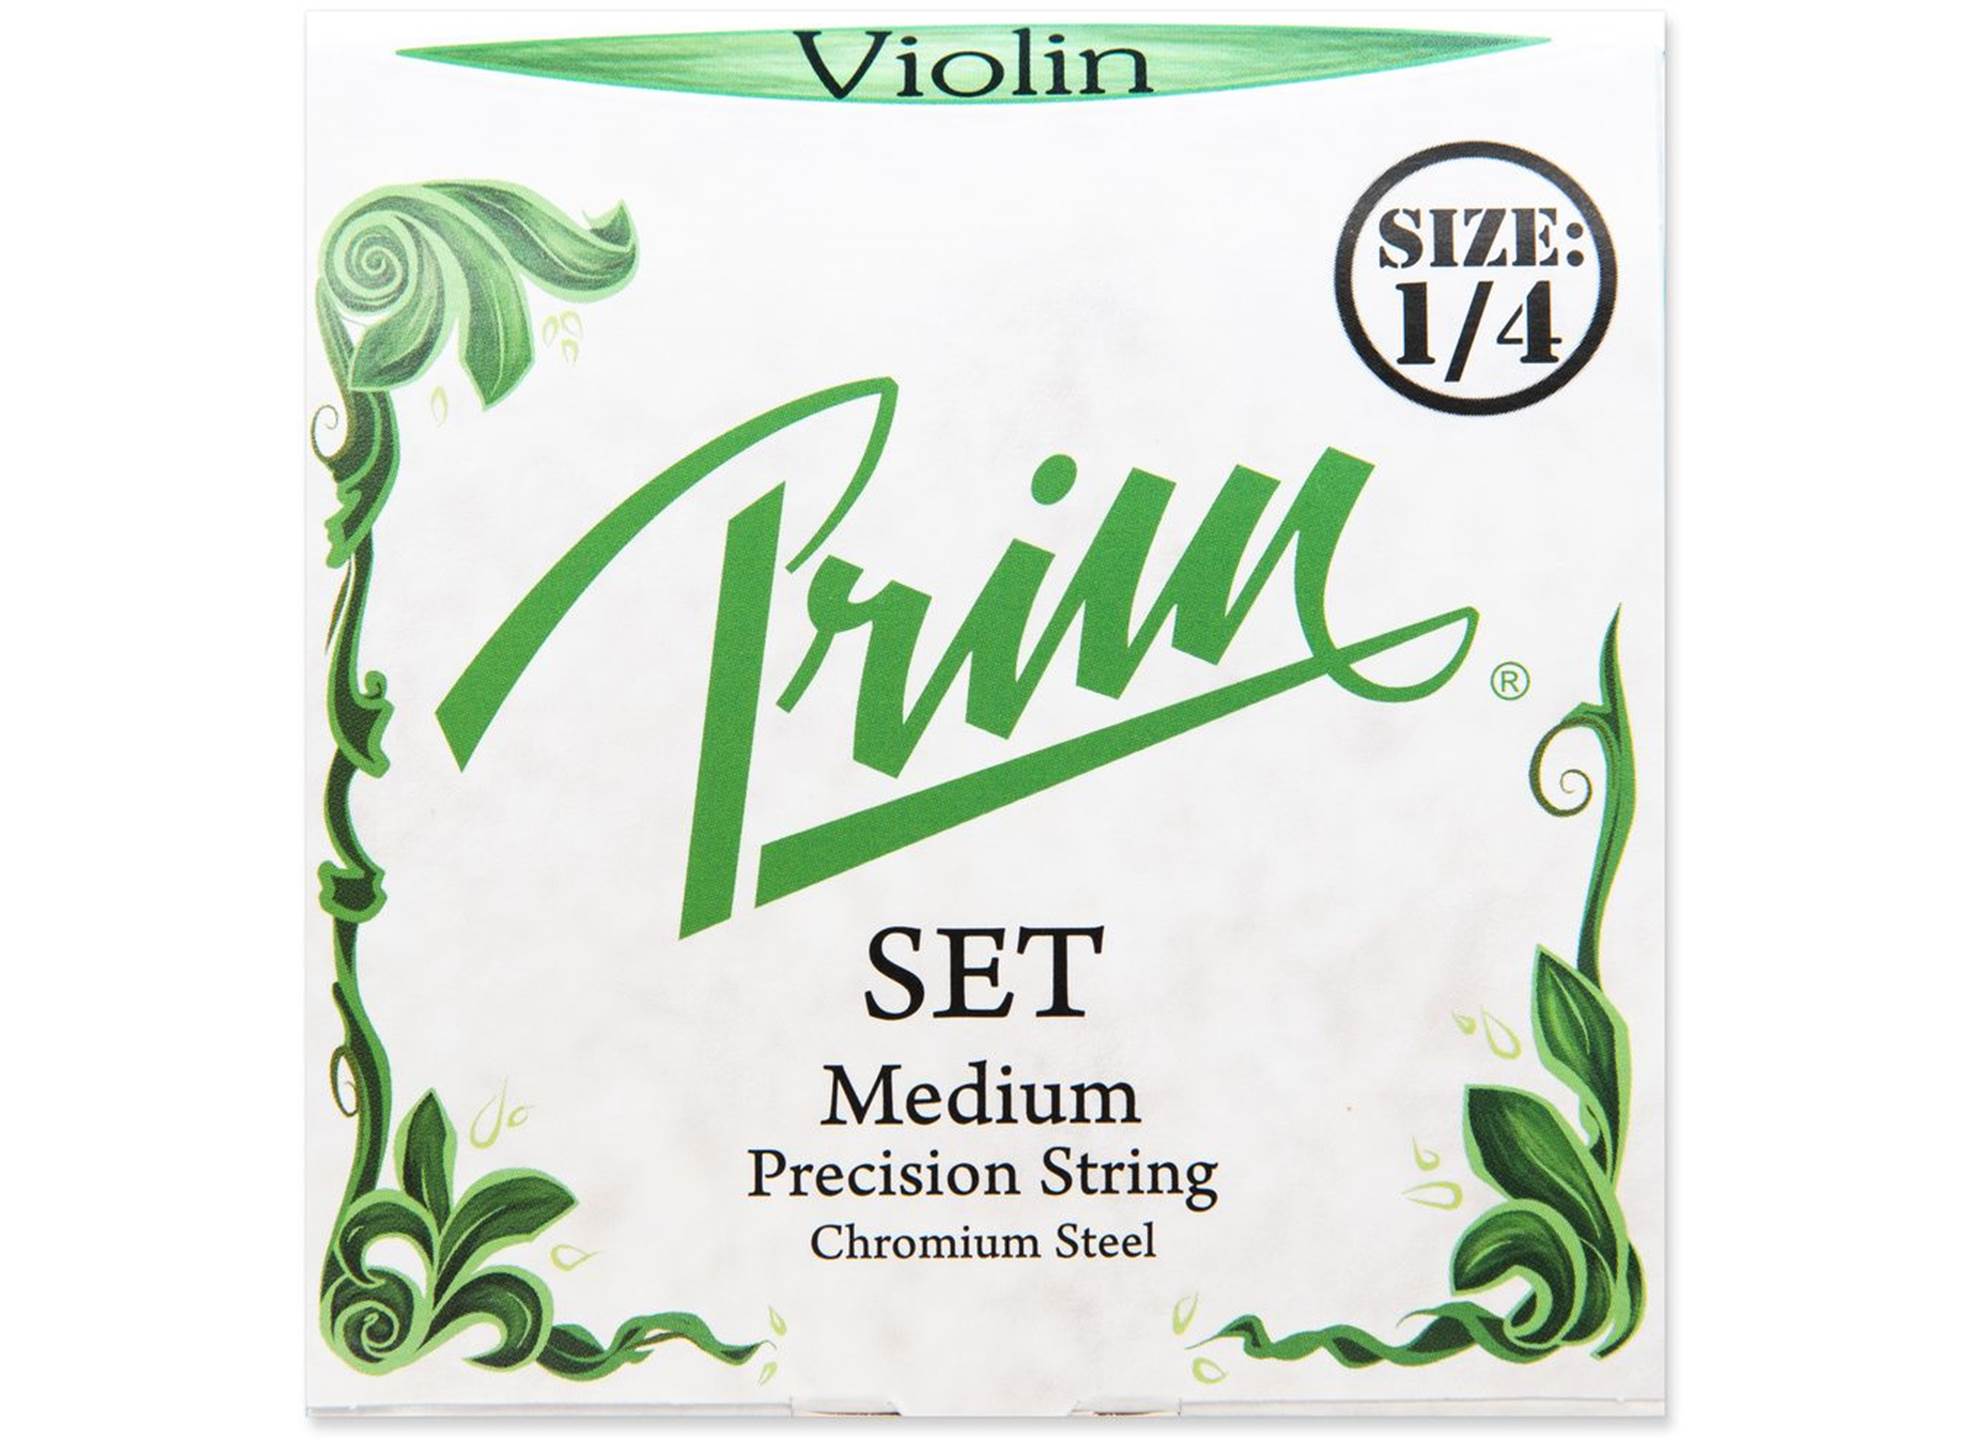 Violin 1/4 Set Medium